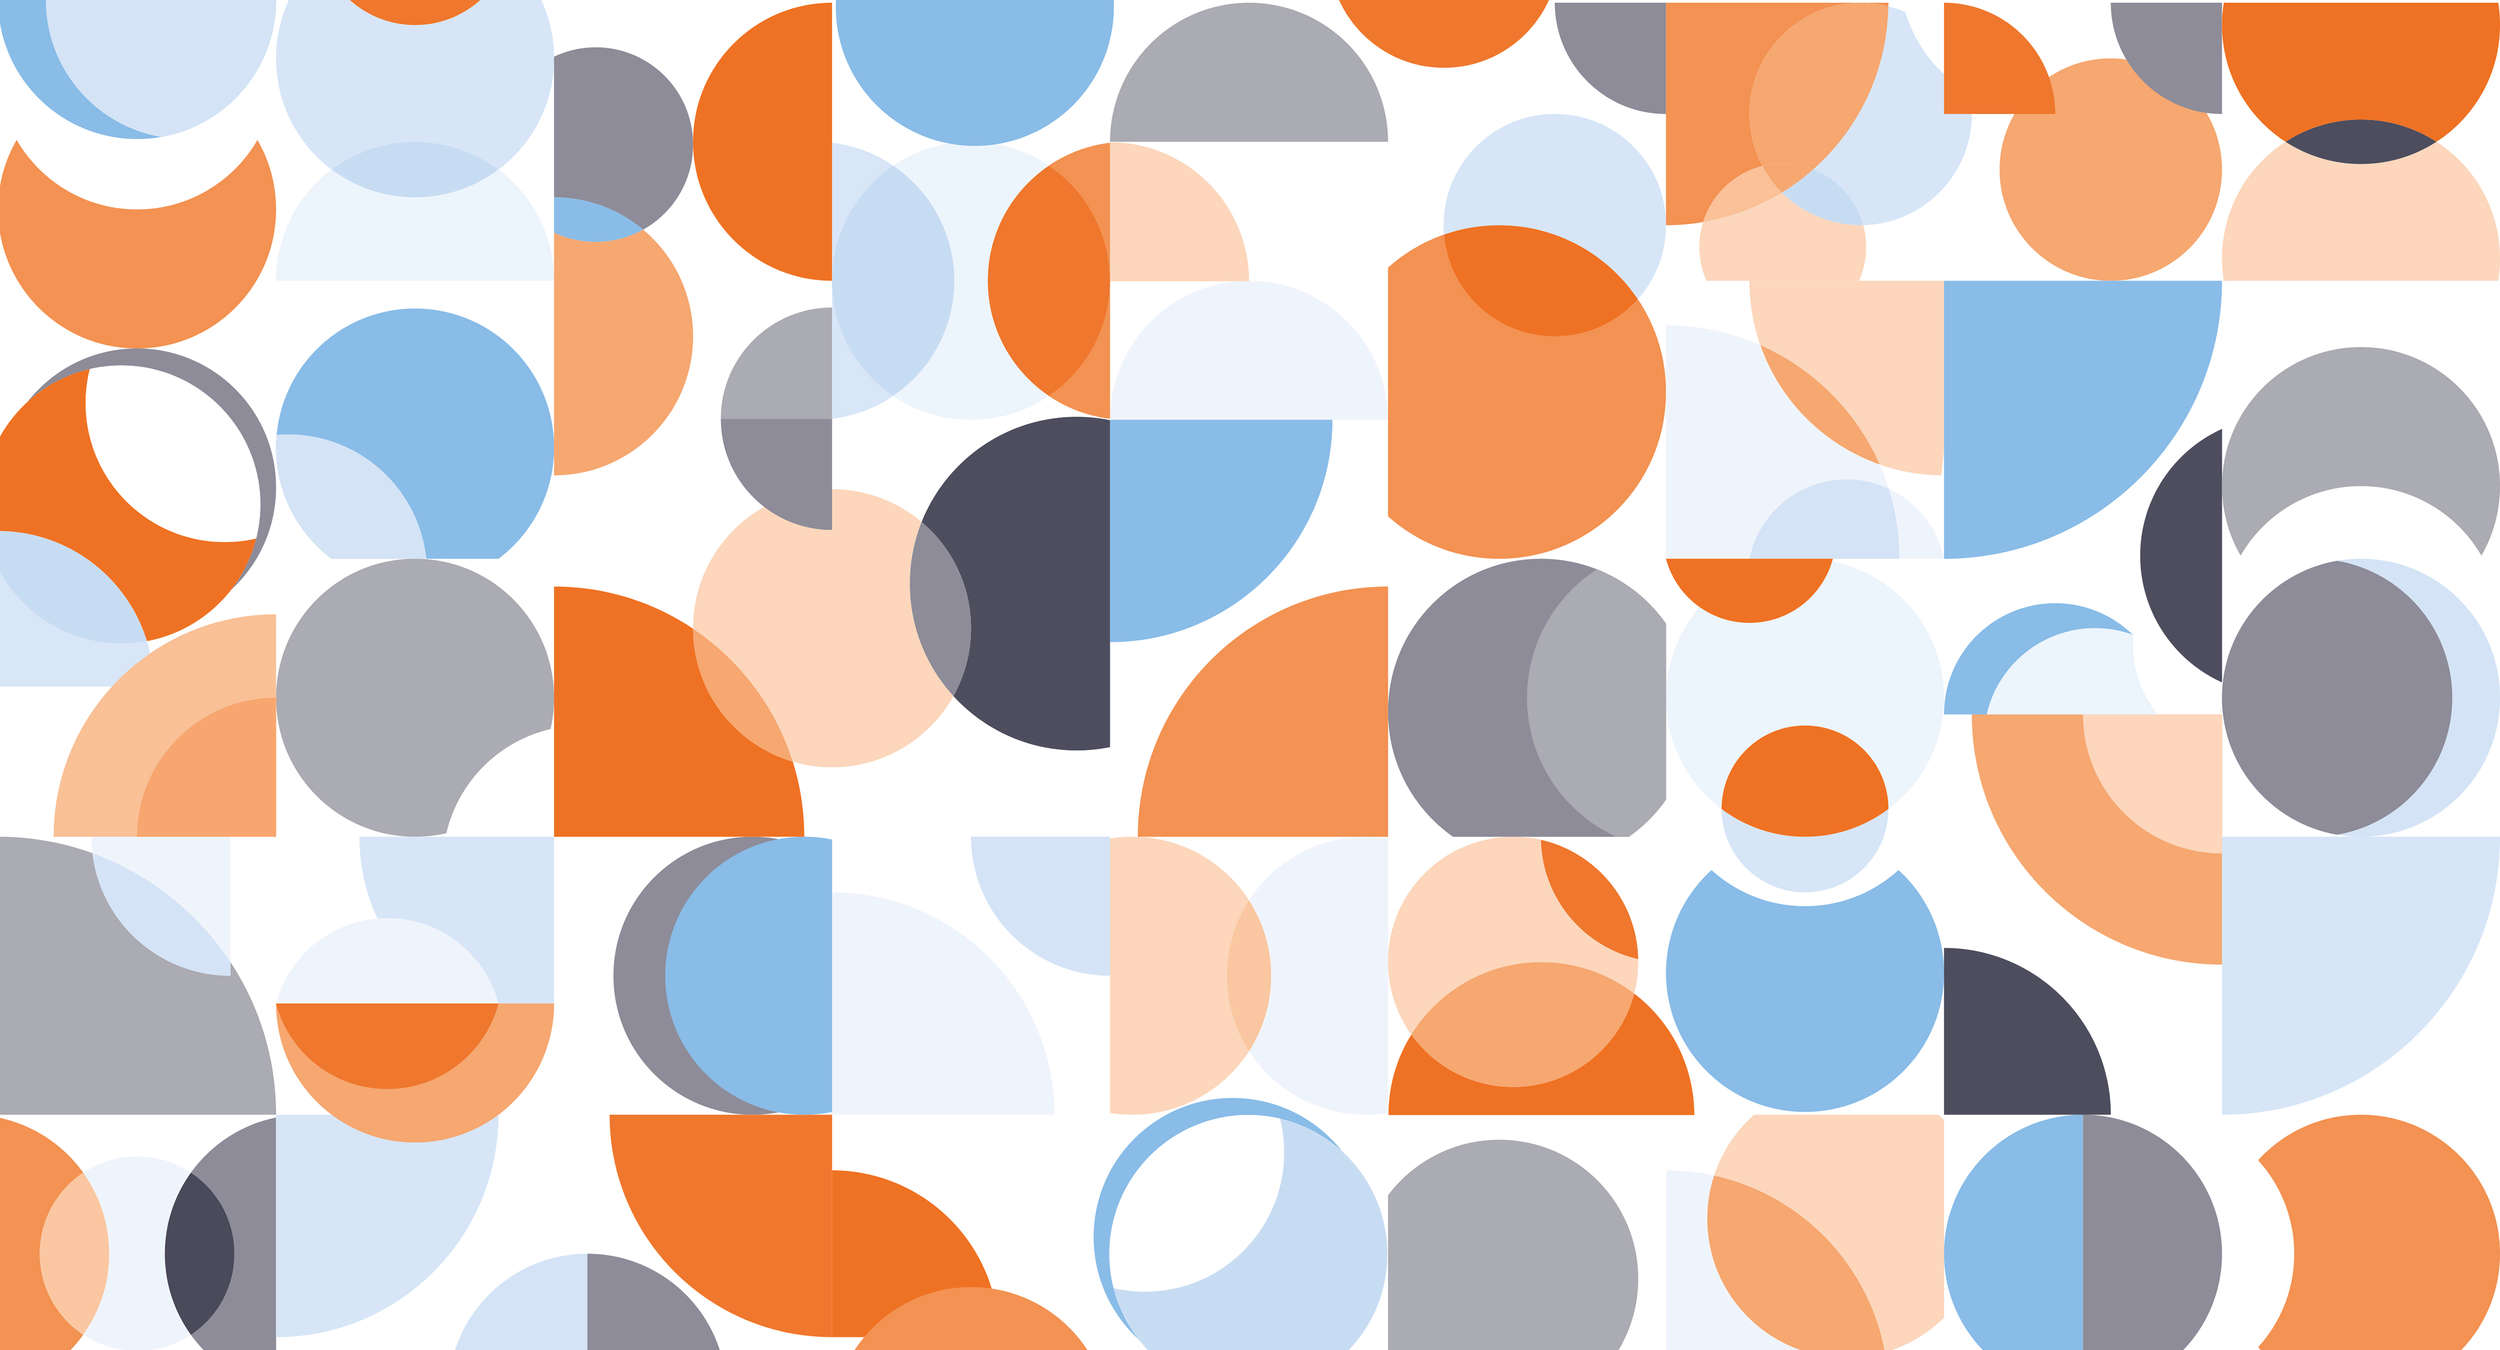             Photo wallpaper retro style, graphic pattern & bright colours - blue, orange, white
        